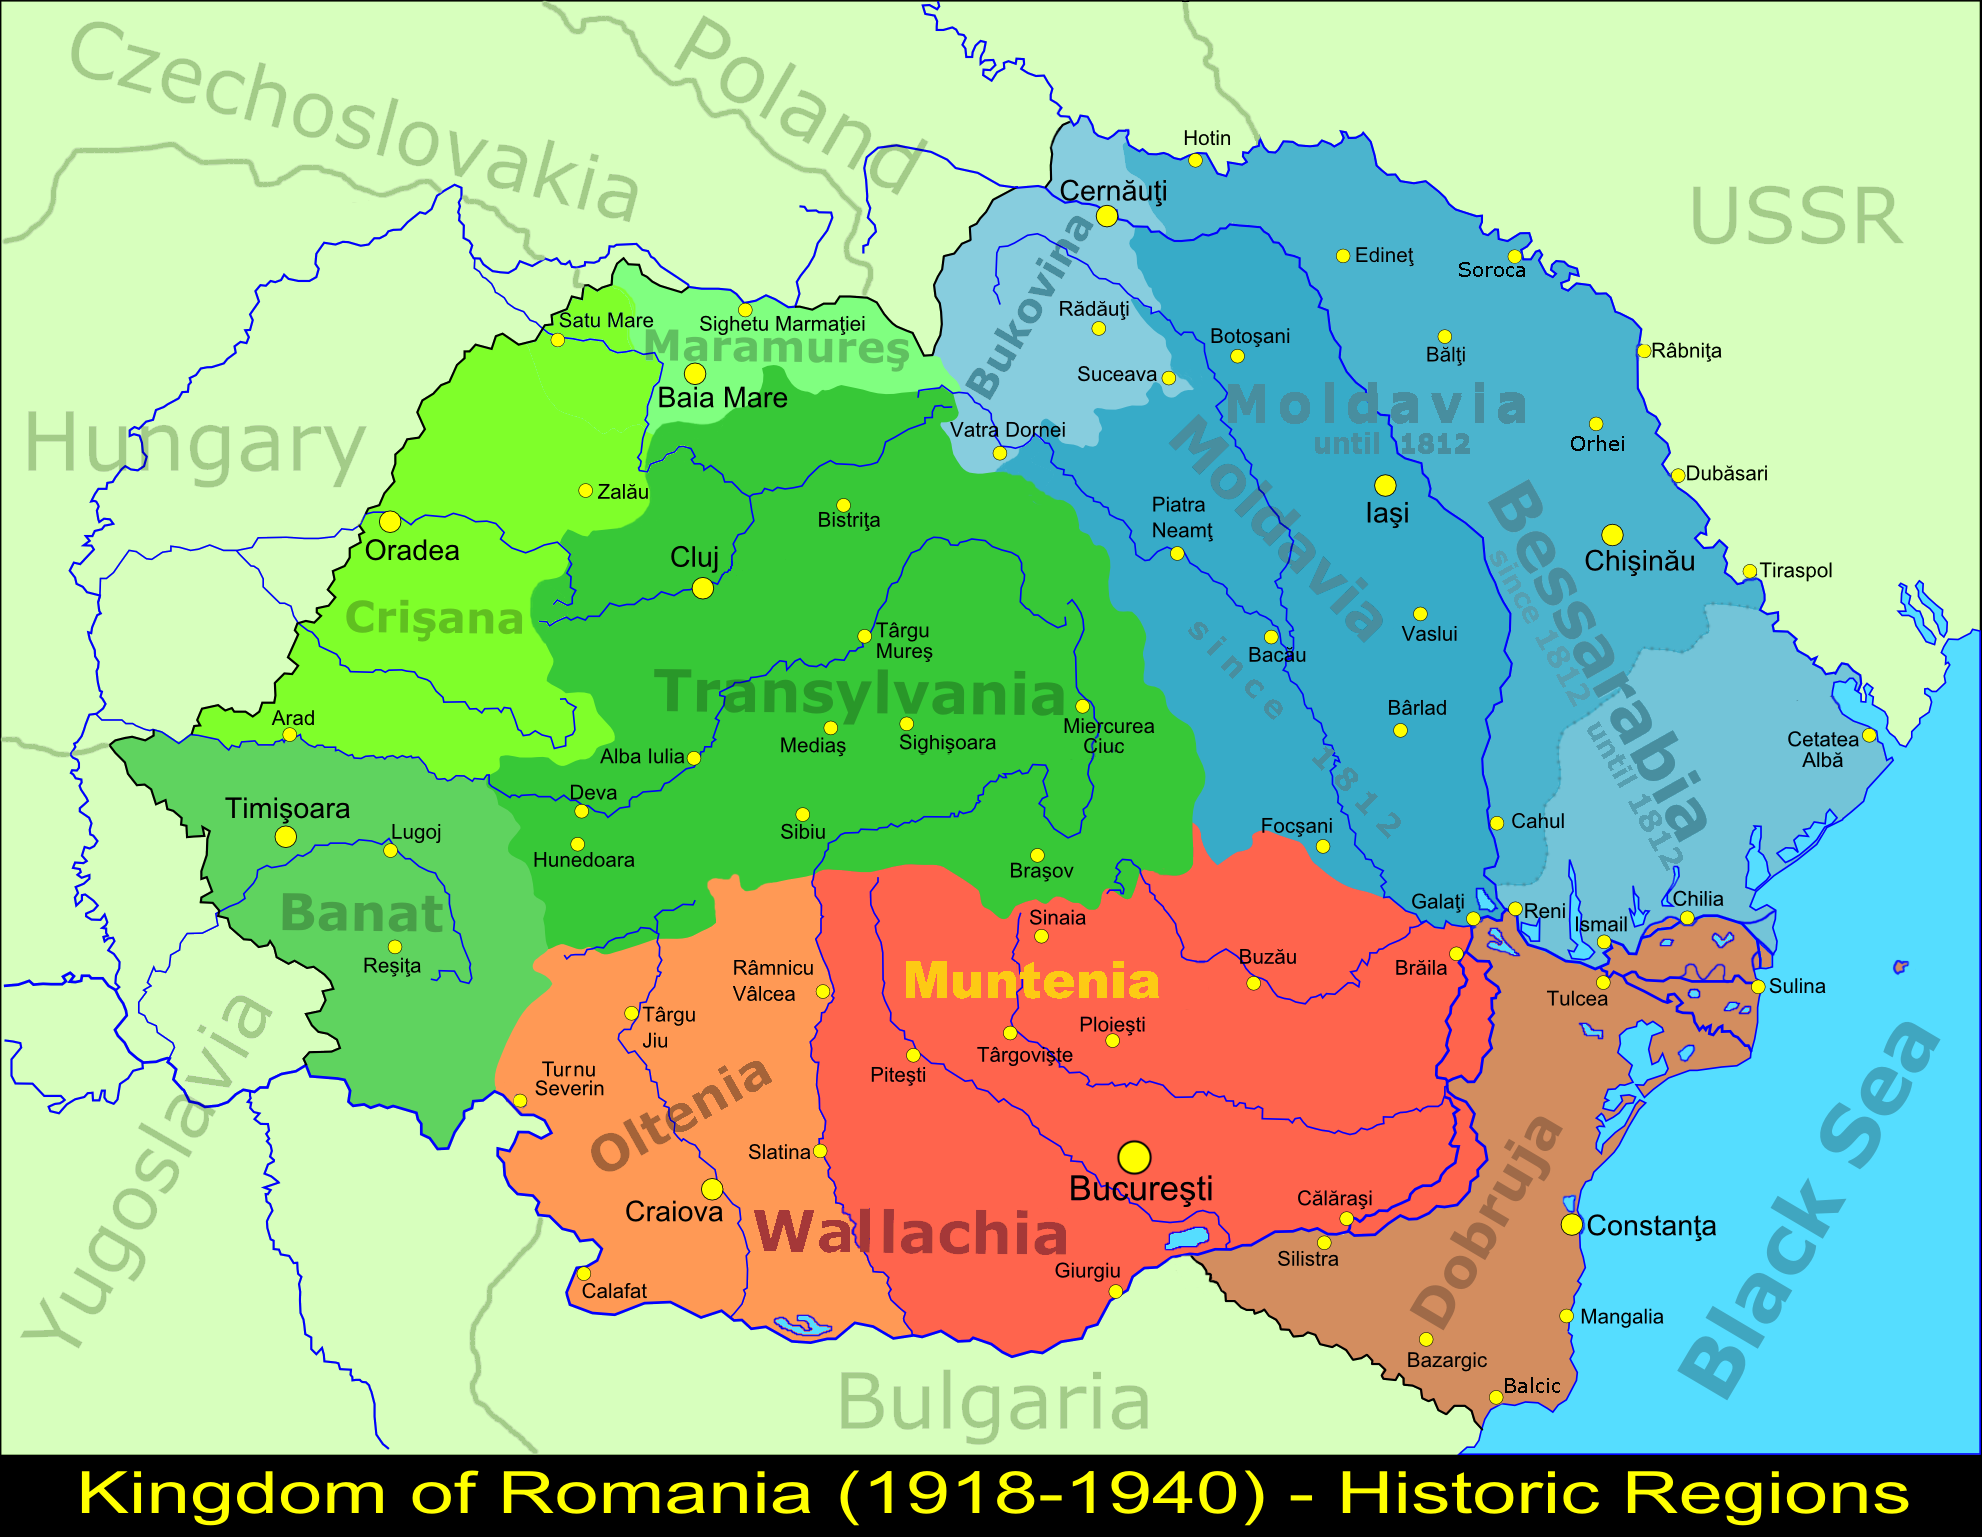 루마니아 왕국 영토 확장